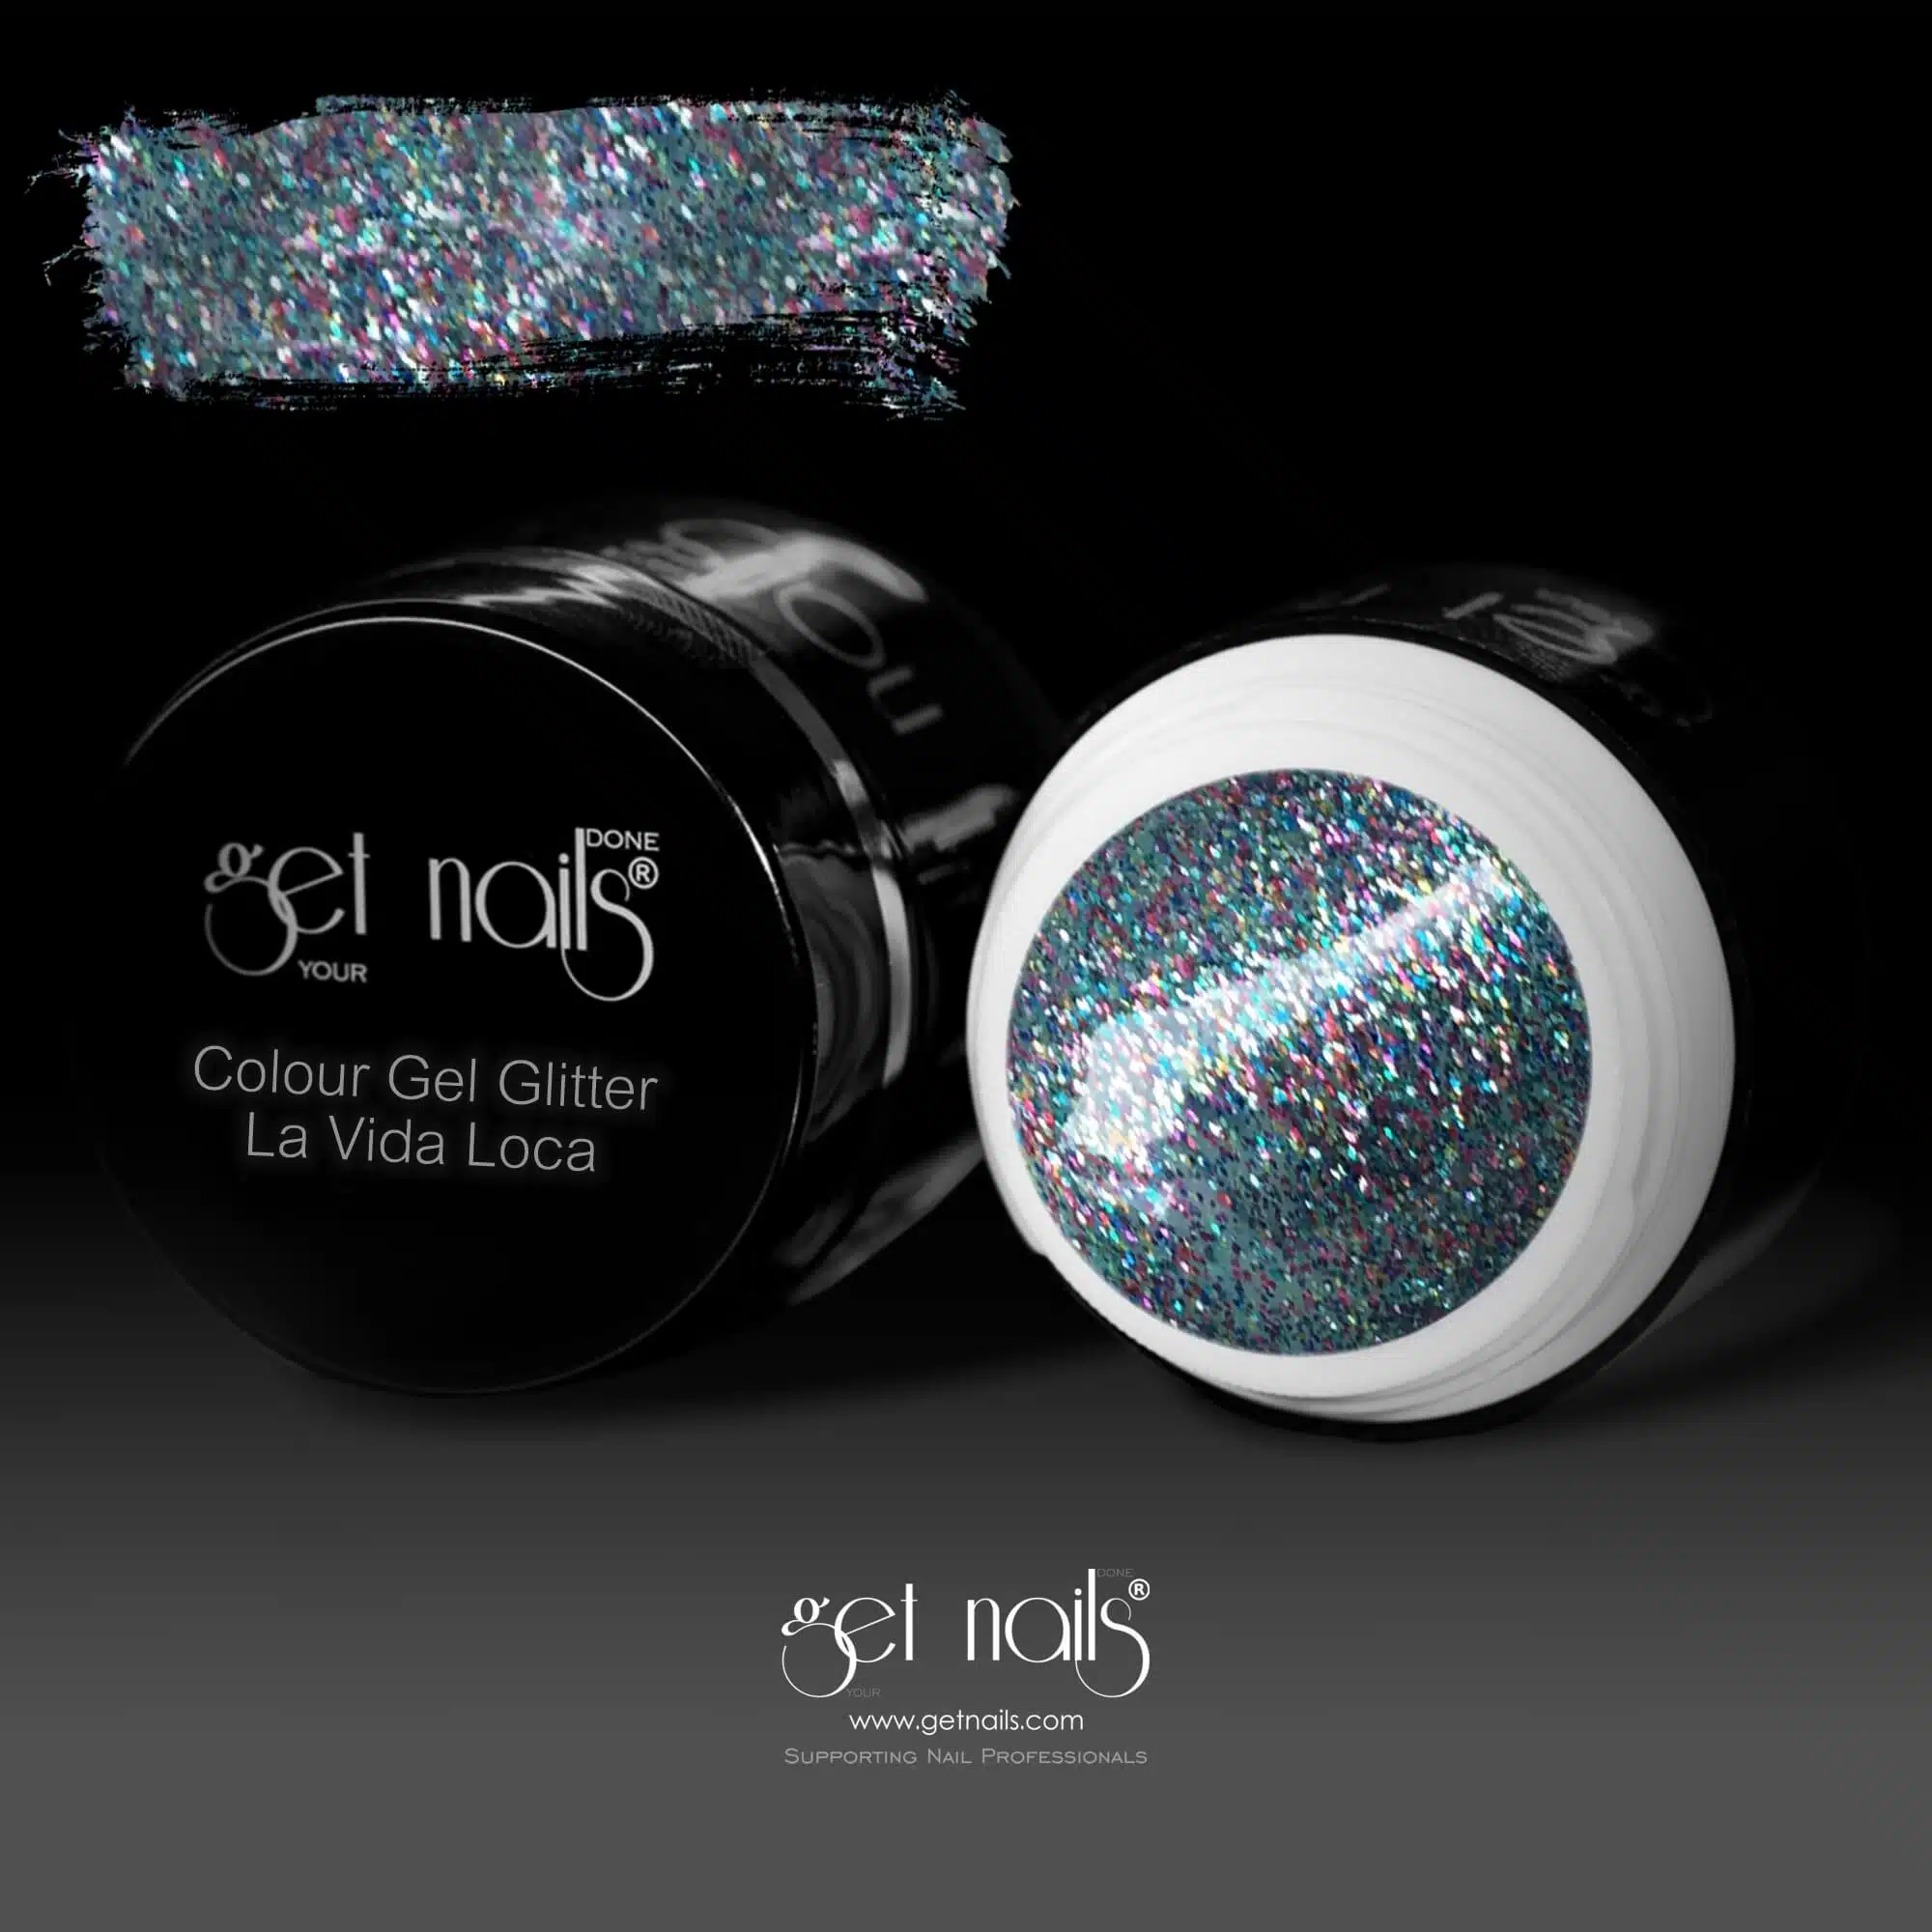 Get Nails Austria - Color Gel Glitter La Vida Loca 5g